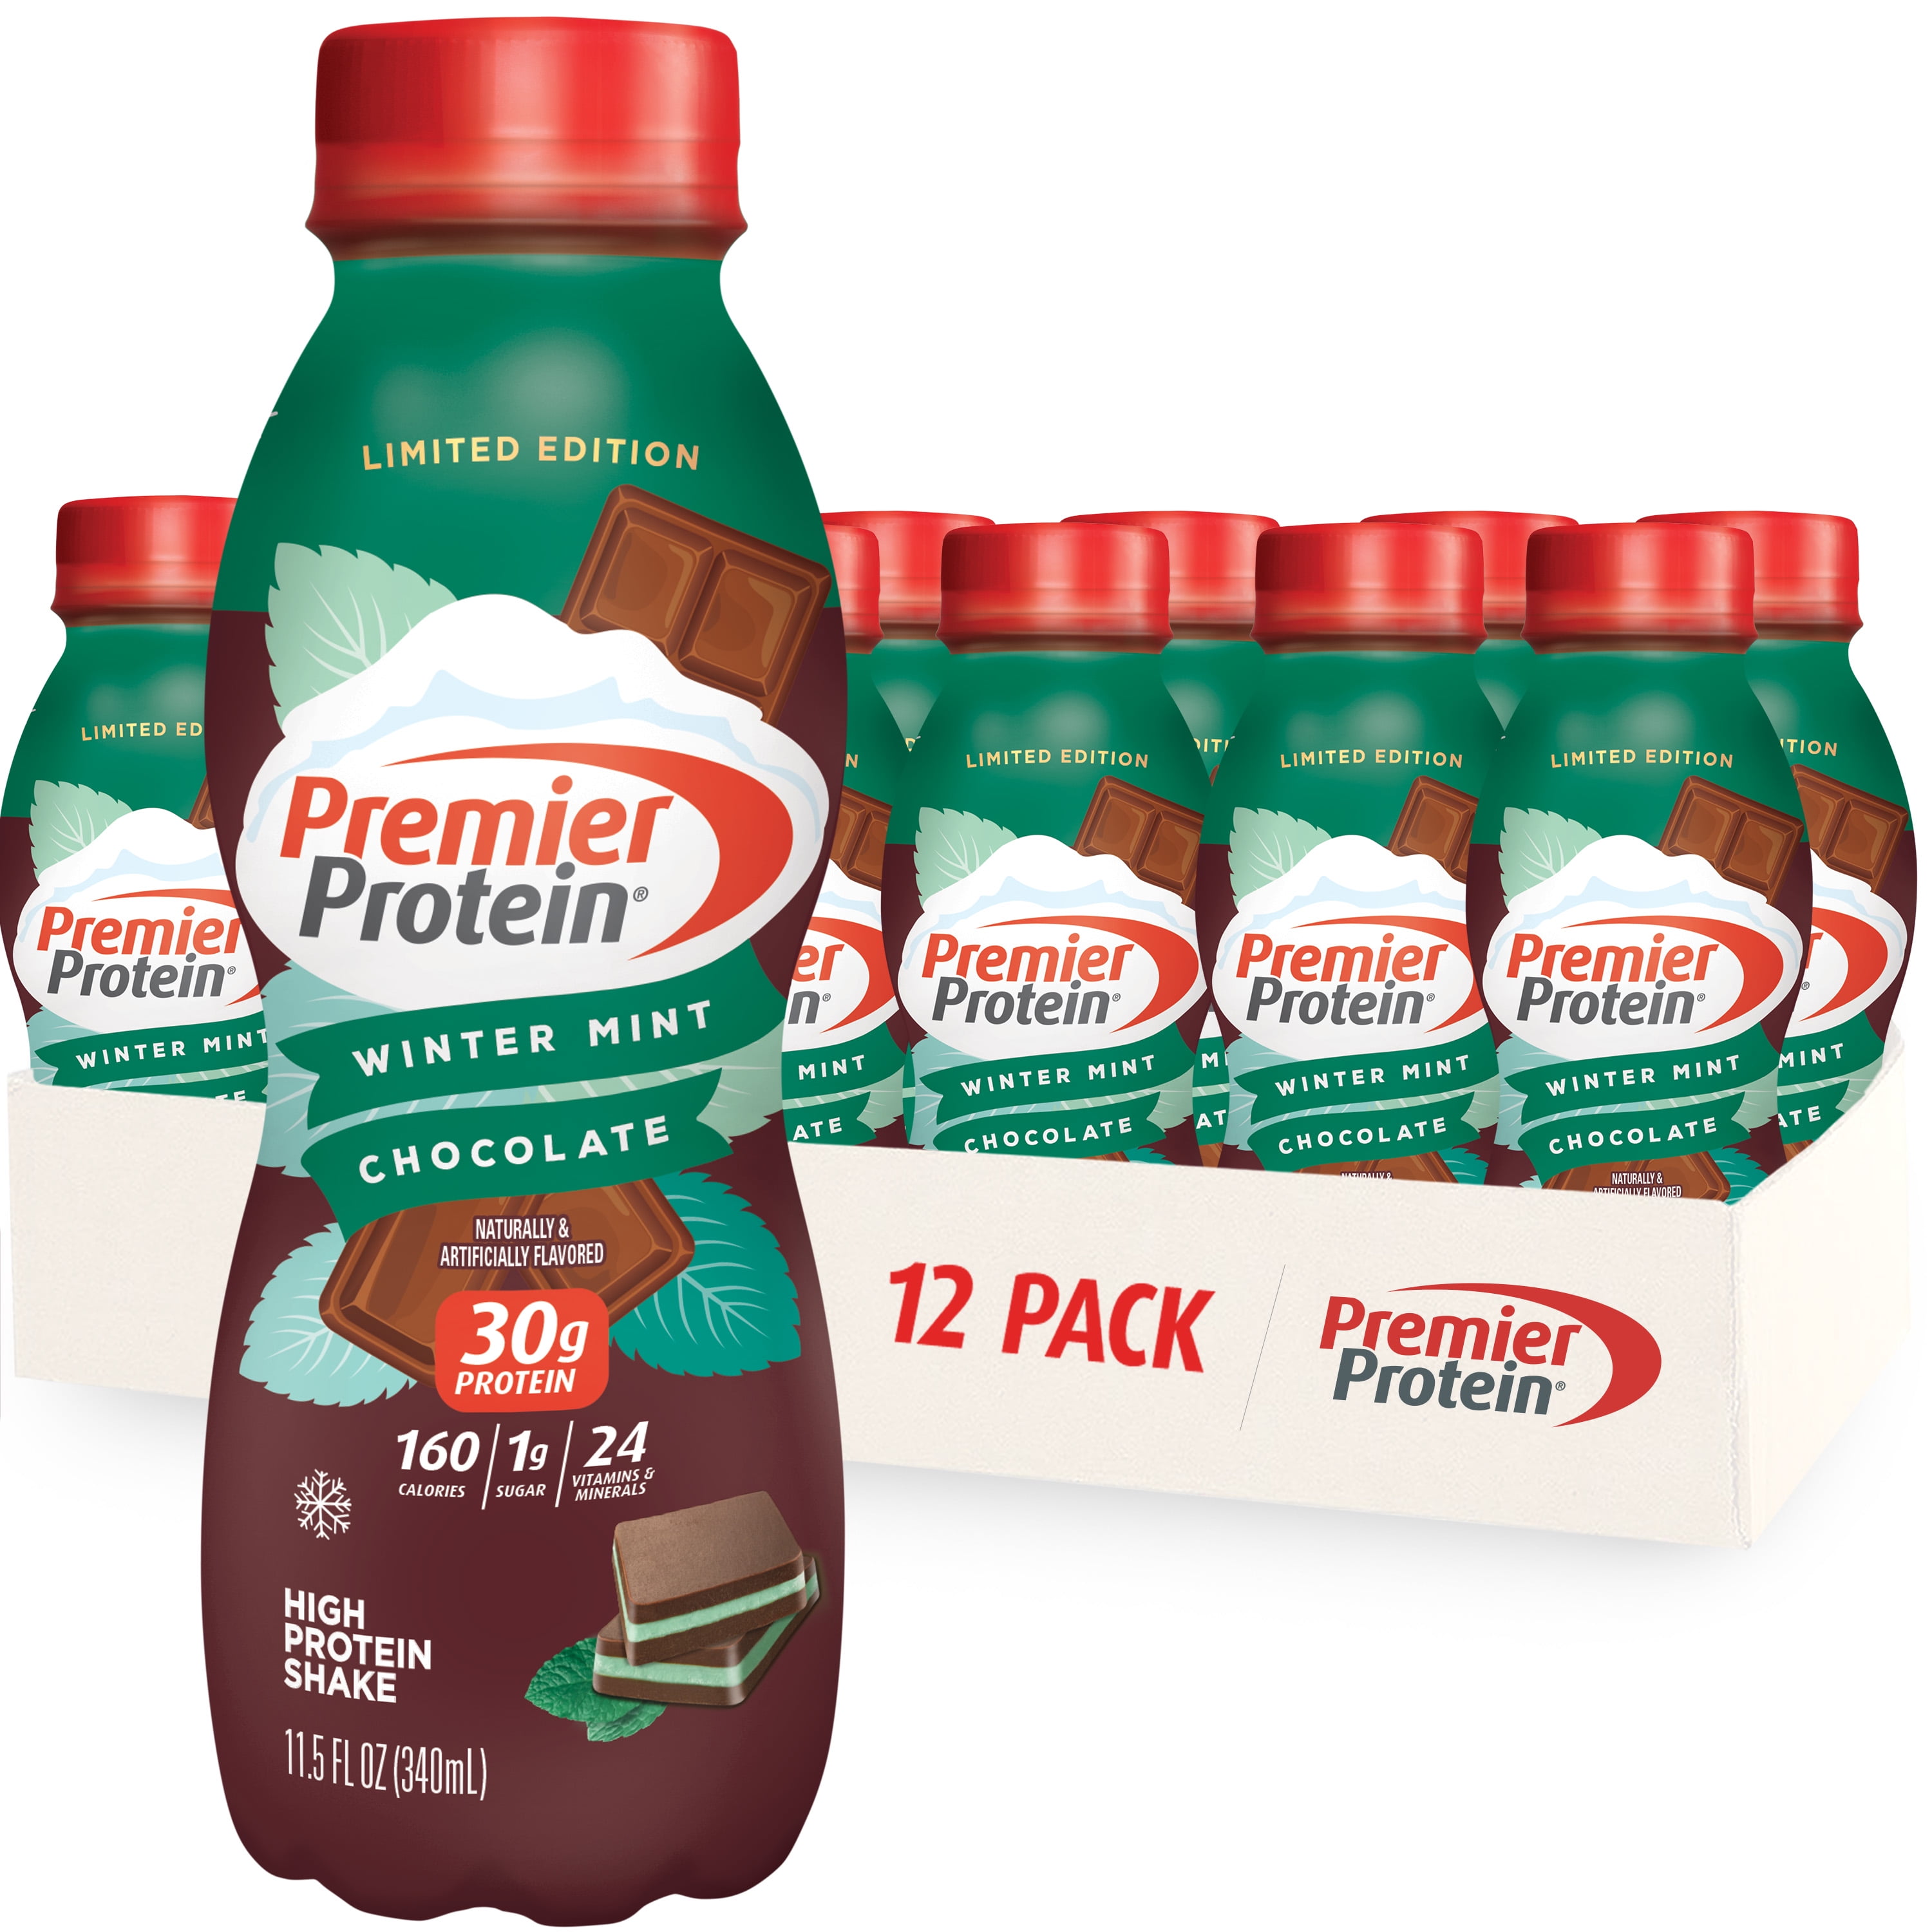 Premier Protein Shake, Chocolate, 30g Protein, 11 fl oz, 4 Ct